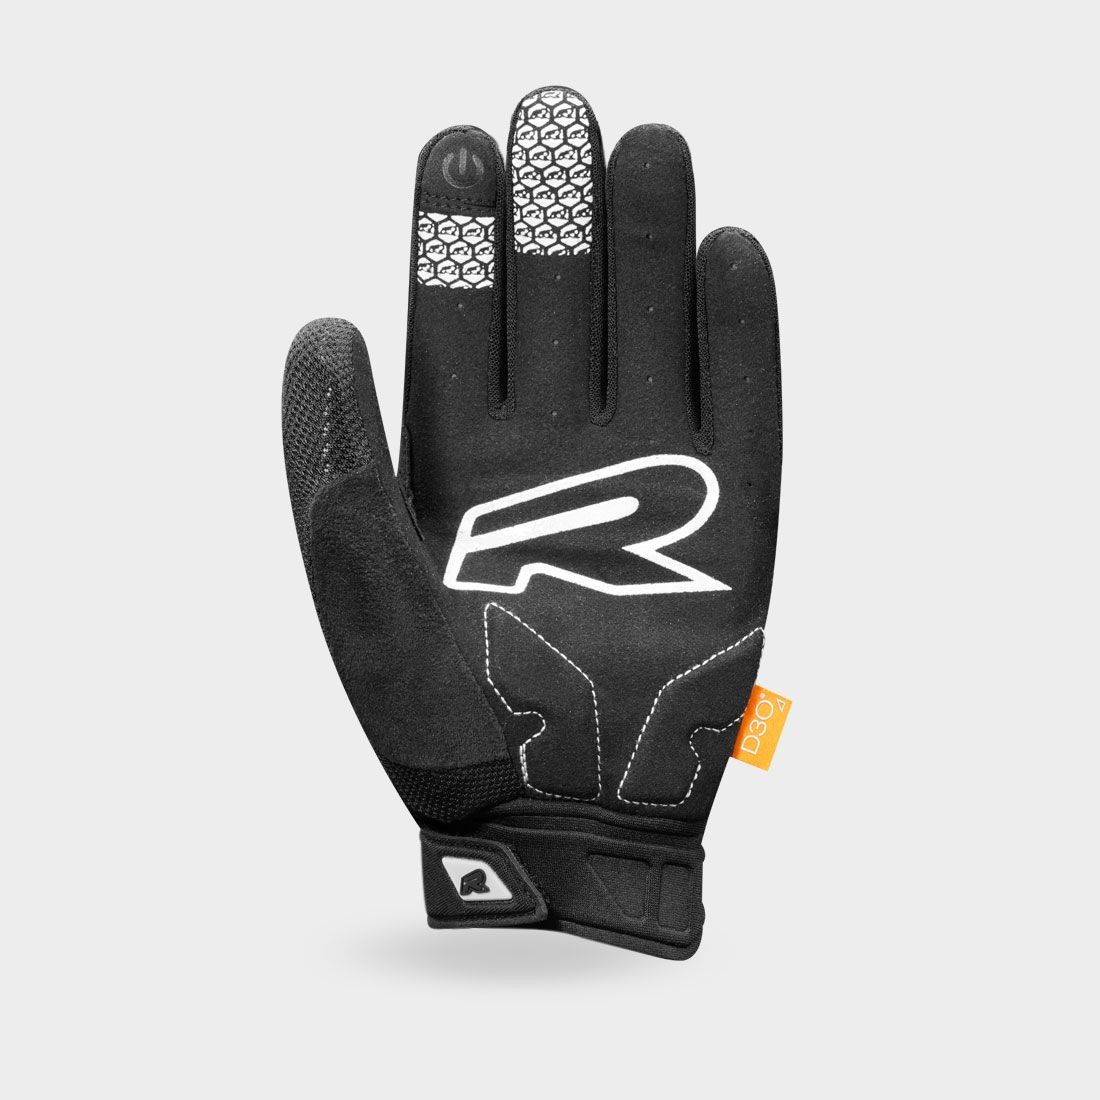 DIGGER - Racer bike gloves